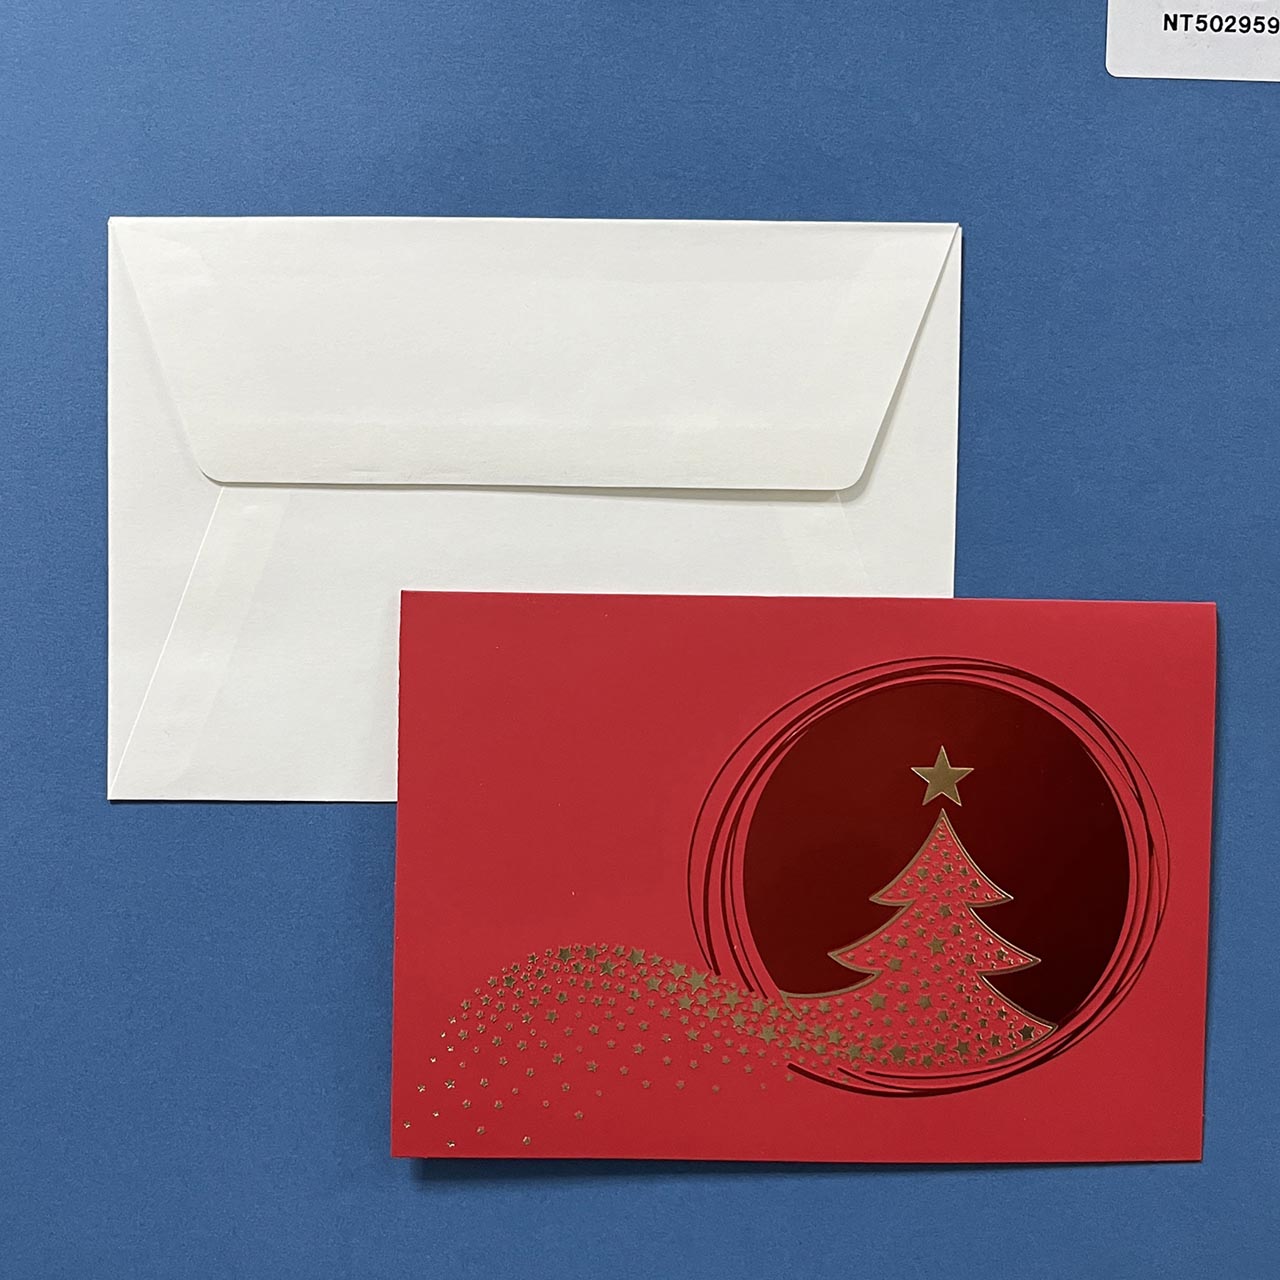 Biglietto di Natale per auguri con copertina in cartoncino rosso, albero di natale lucido a rilievo dorato. Un foglio ci colore bianco all'interno, permette di inserire l'augurio personalizzato